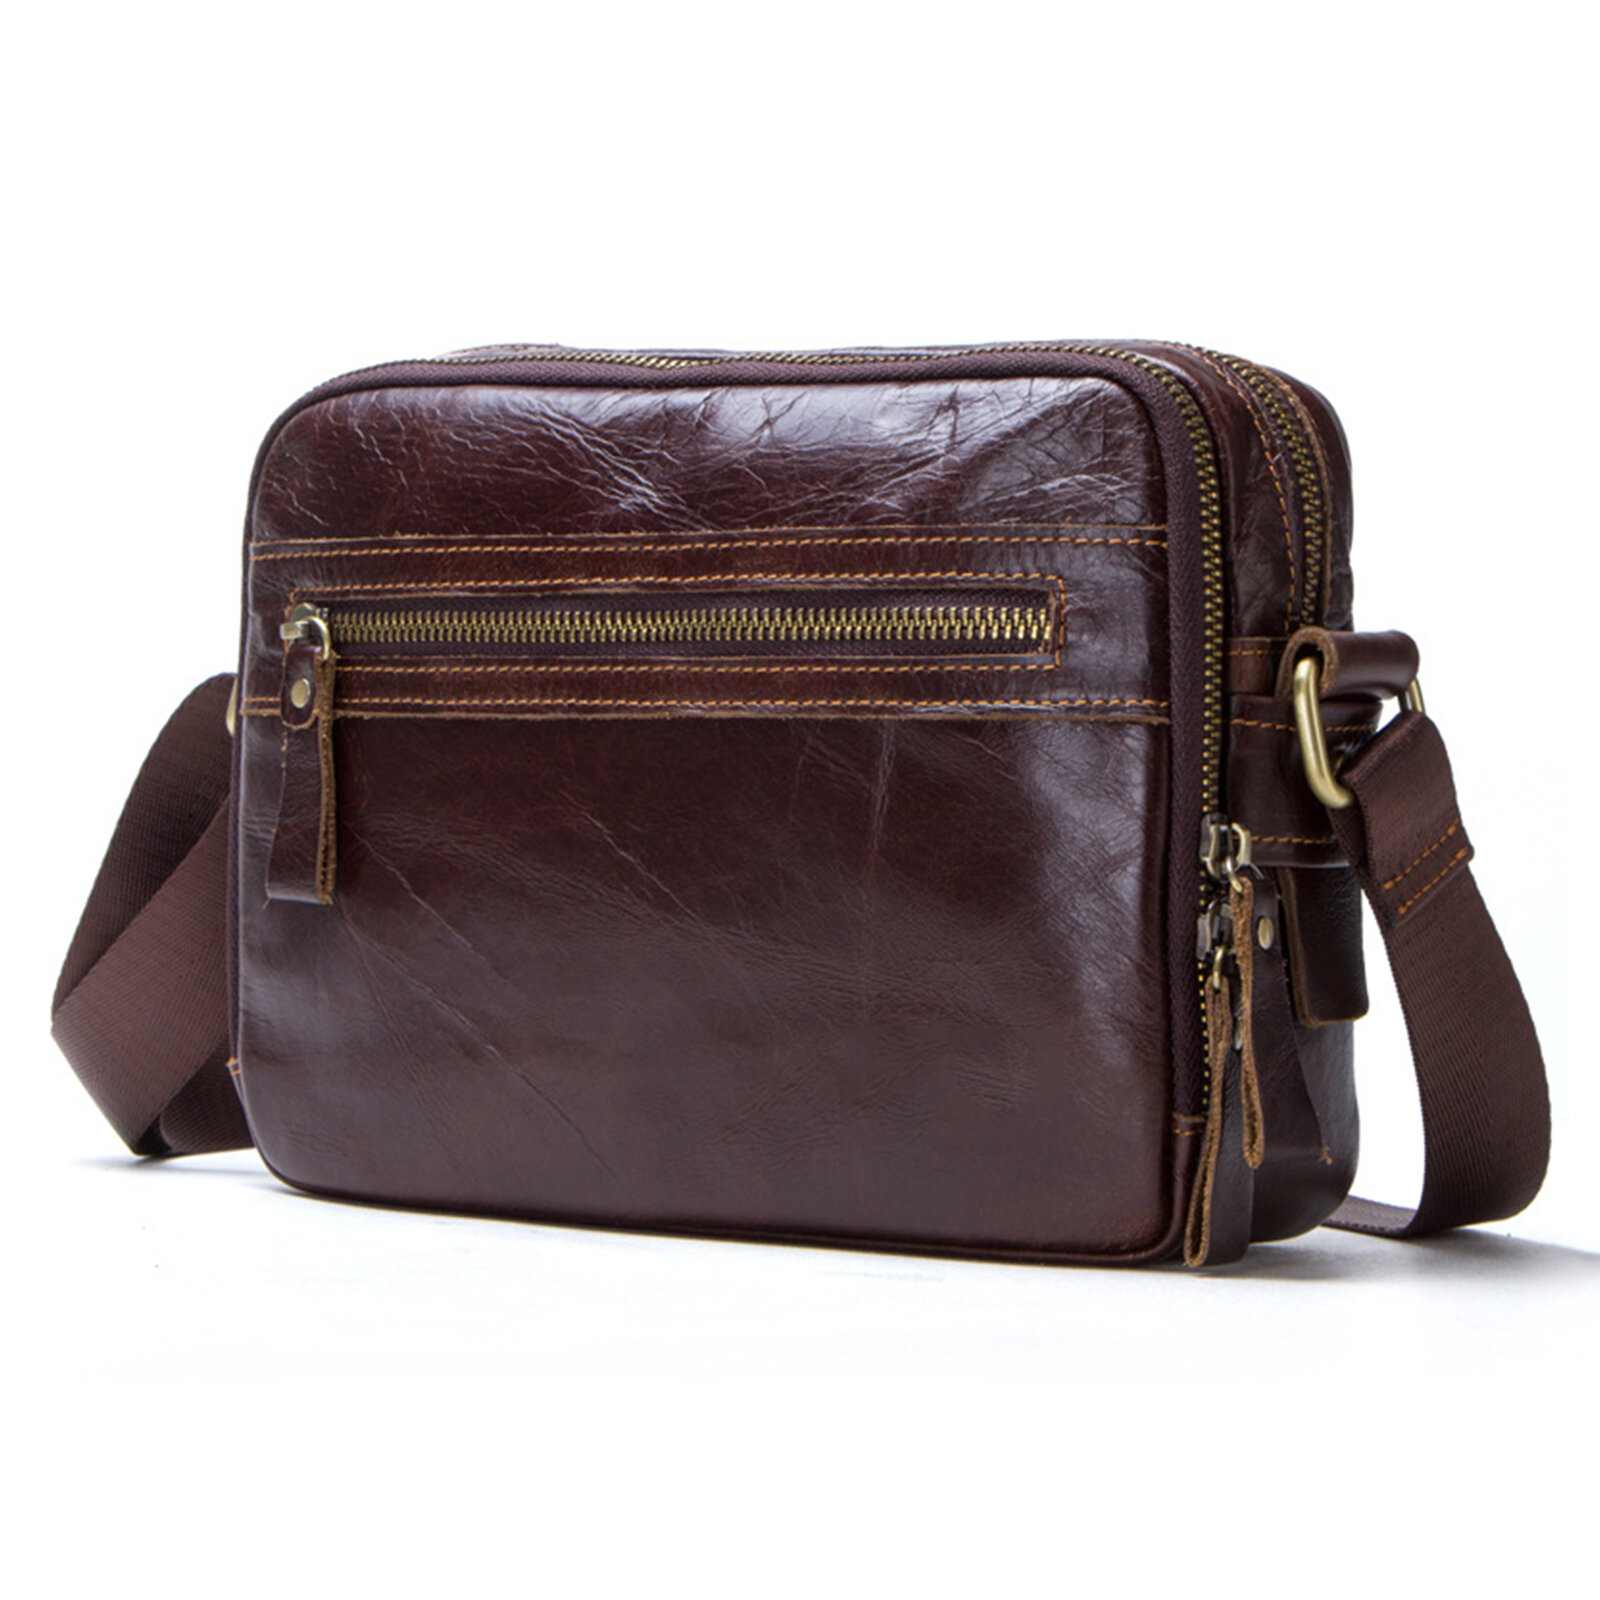 Menico Men Genuine Leather Vintage Business Crossbody Bag Large Capacity Multifunctional Shoulder Messenger Bag